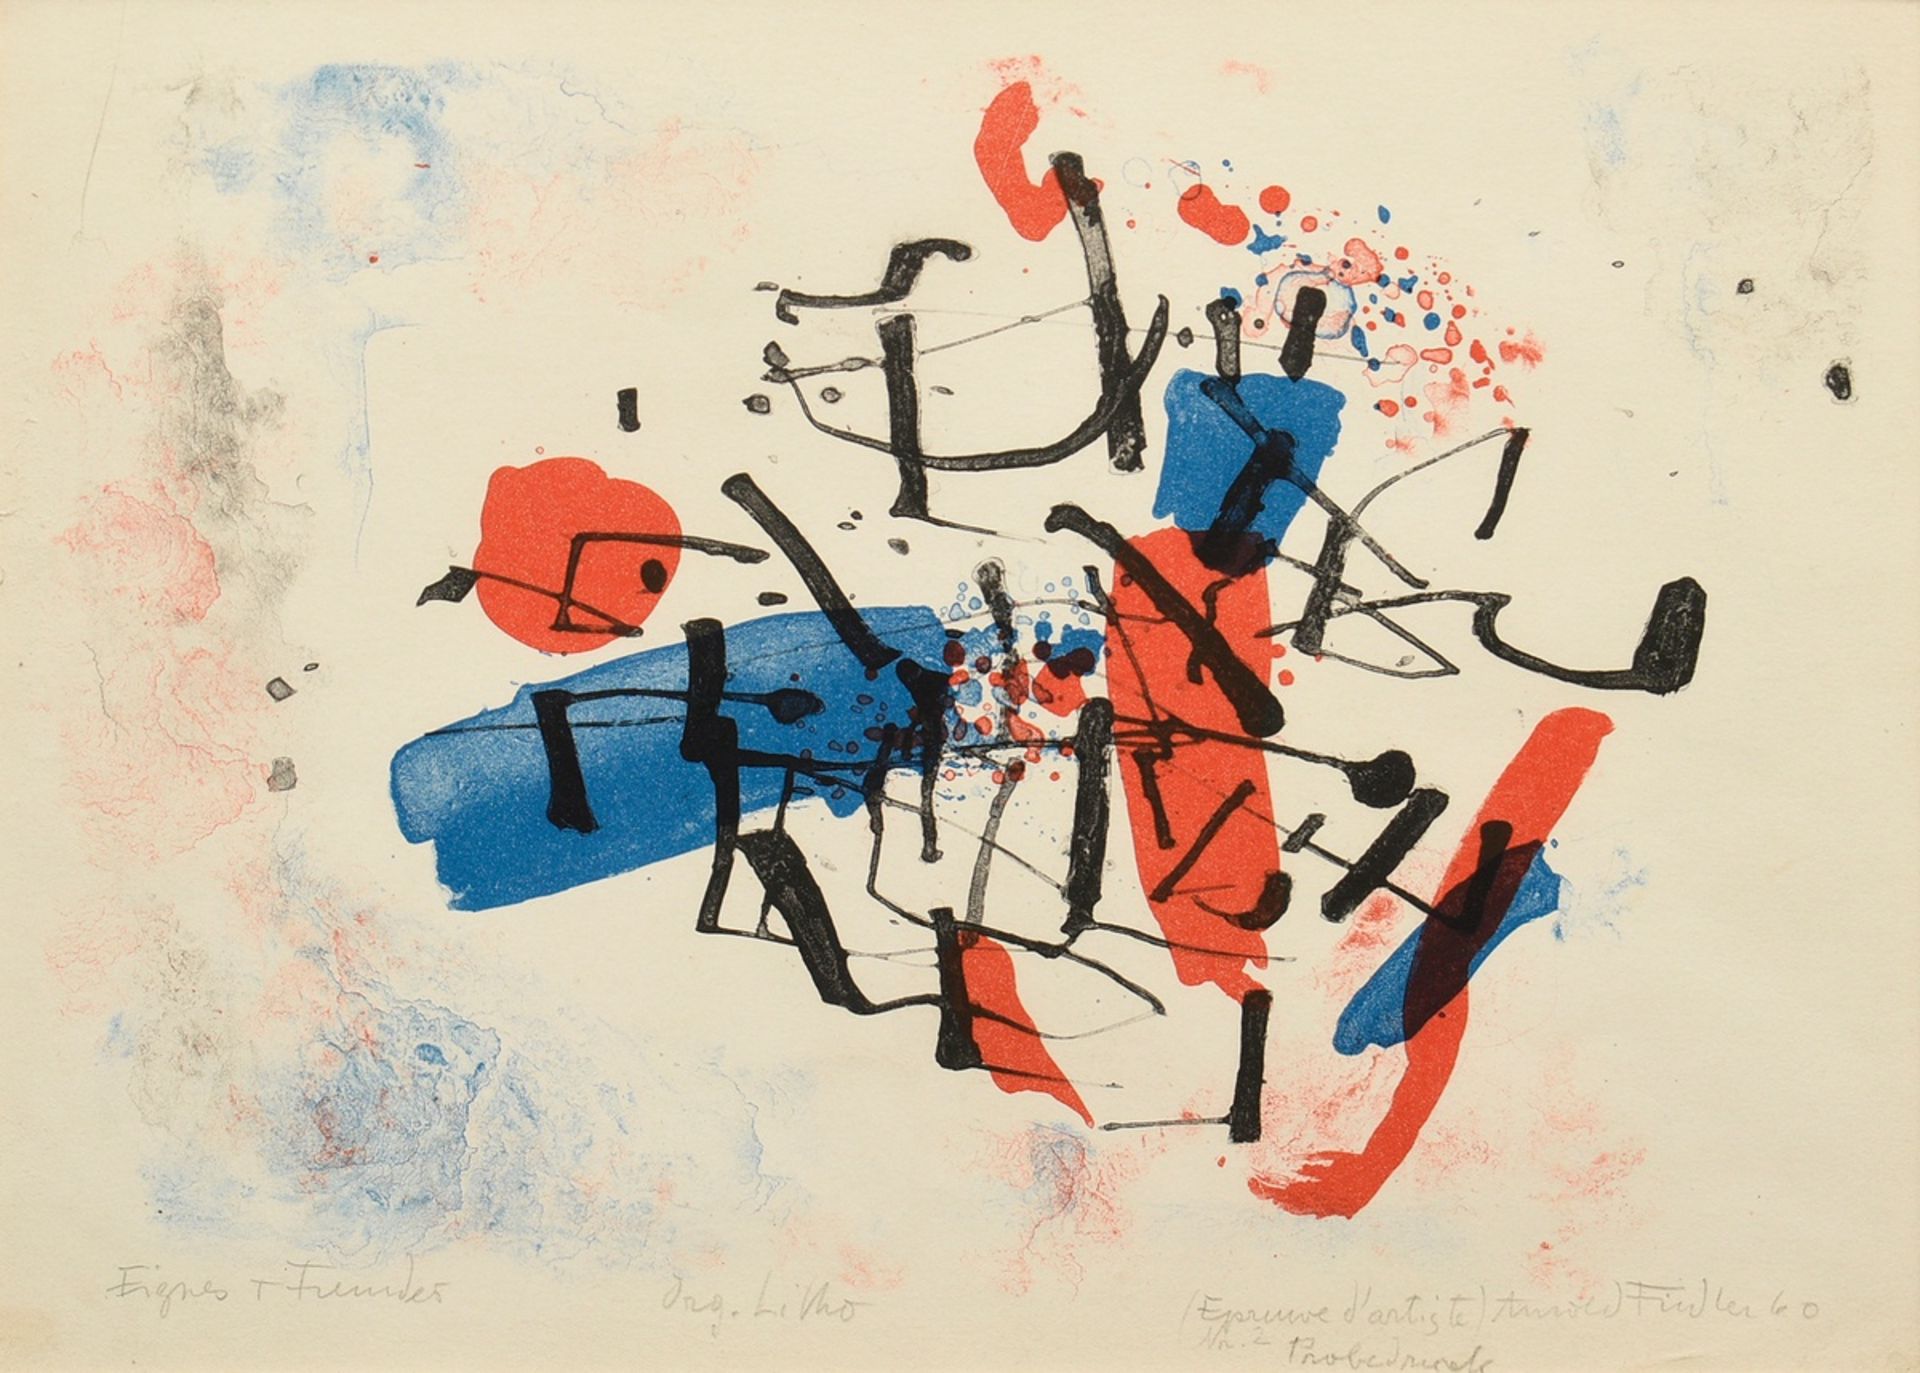 Fiedler, Arnold (1900-1985) ‘Eigenes + Fremdes’ 1960, colour lithograph, e.a./proof, a. sign./dat./